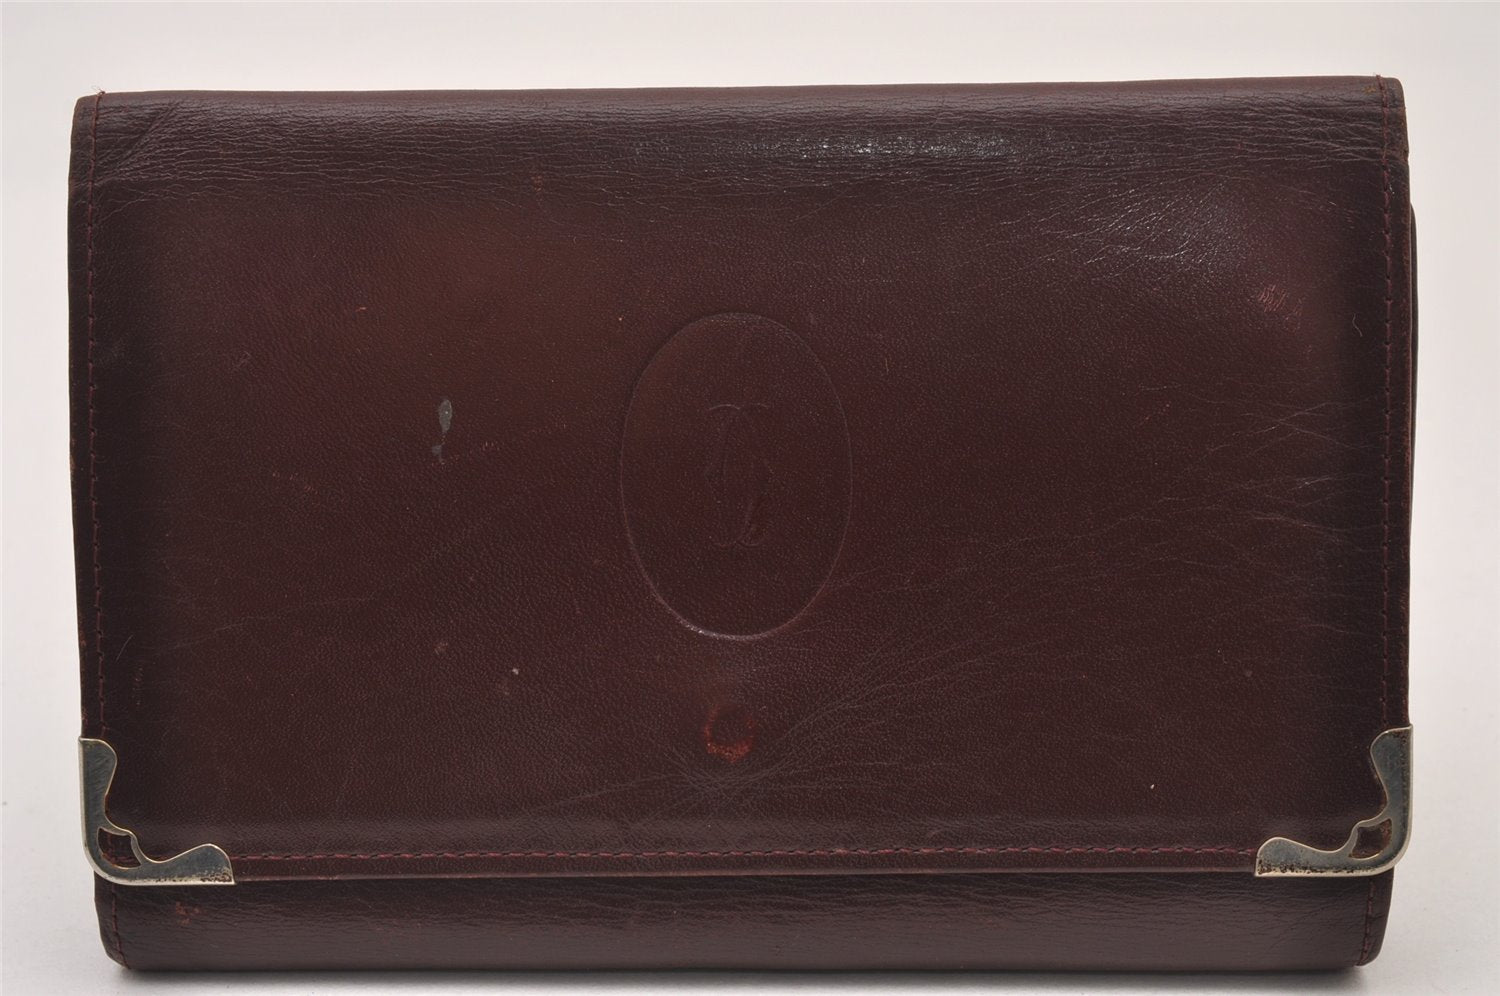 Authentic Cartier Must de Long Wallet Glasses Case Leather Bordeaux 4Set 2918I